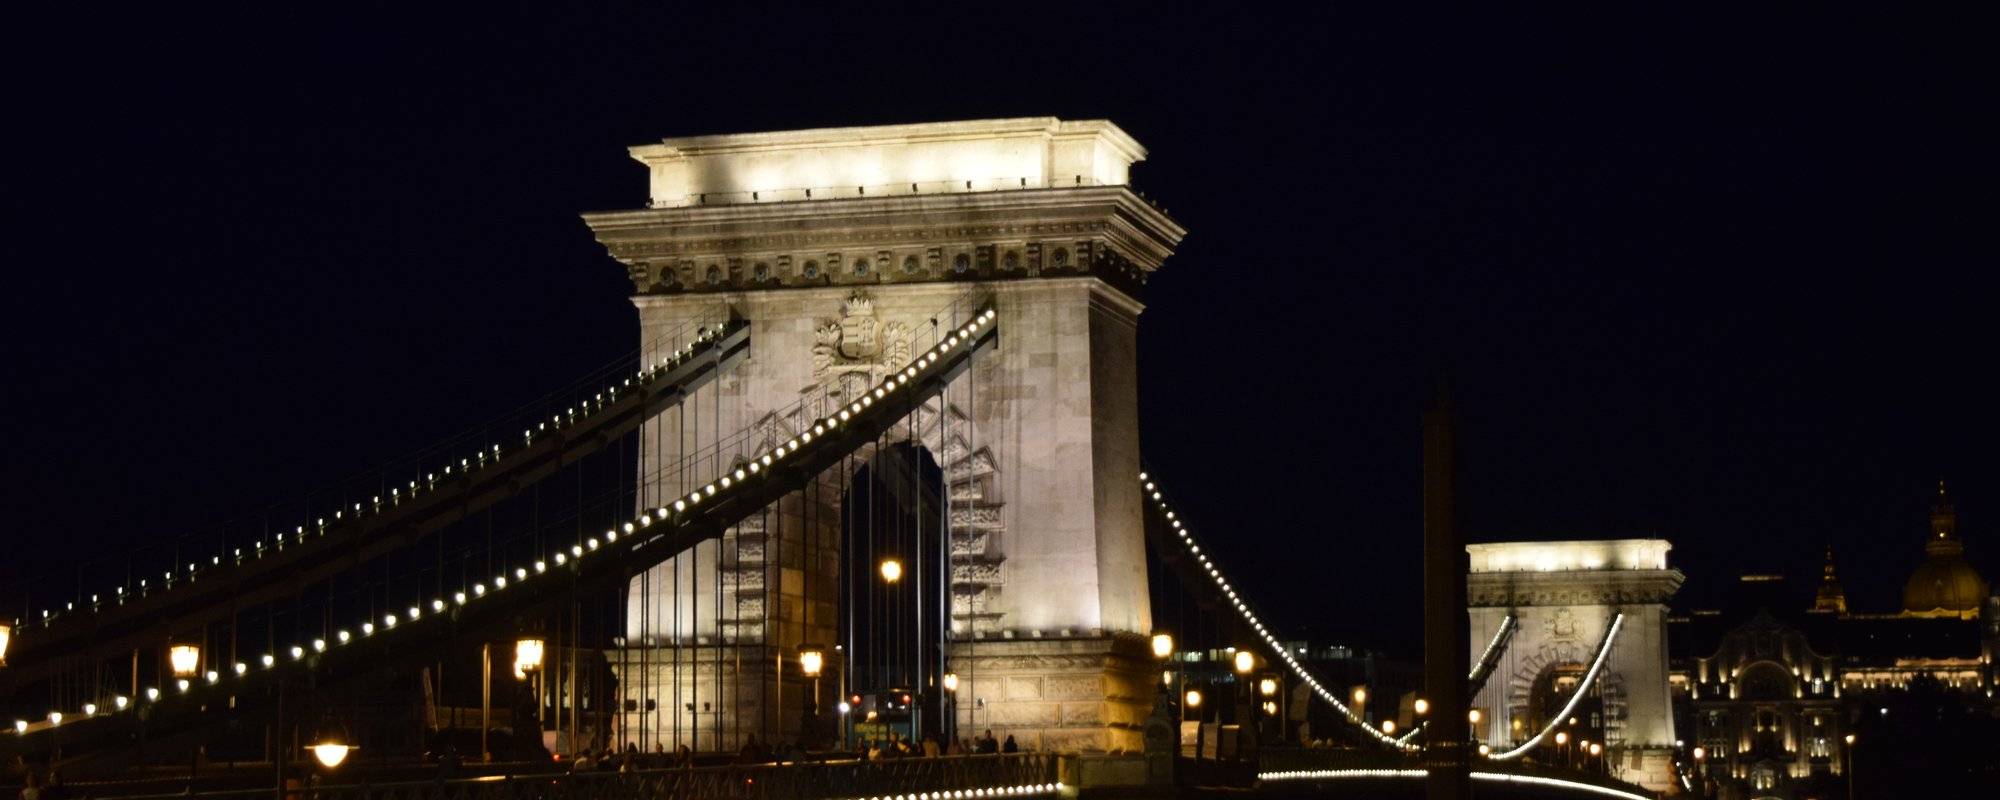 Neoxian City Photo Challenge week 11 - Széchenyi Chain Bridge - Budapest, Hungary